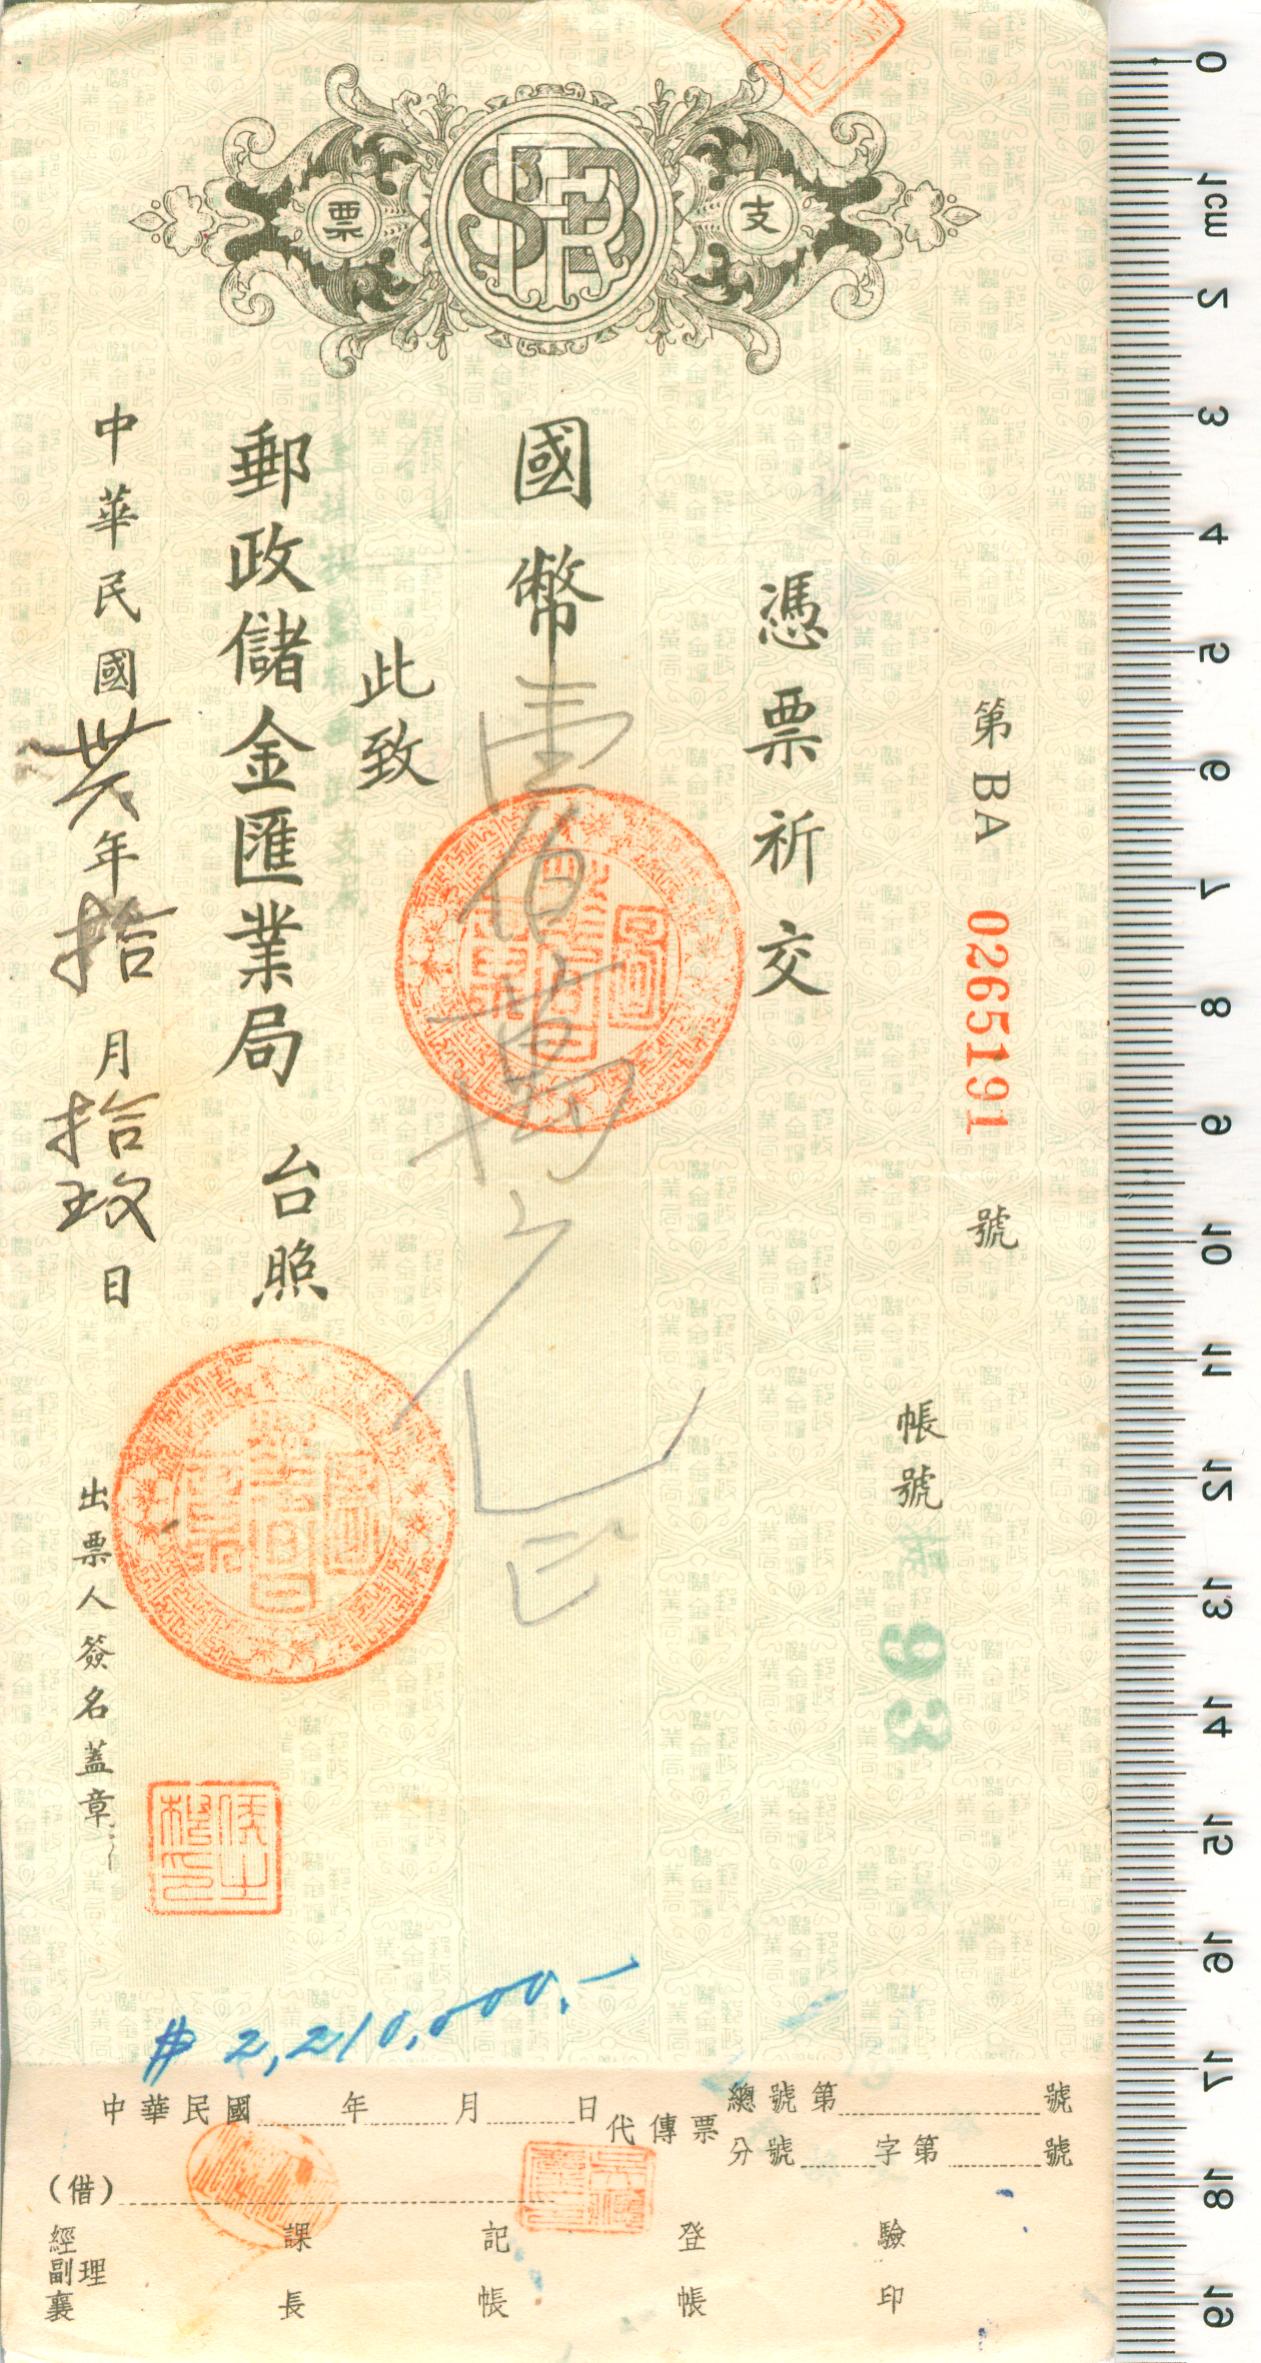 D1171, Ckeck of China Post Saving Bank, China 1947